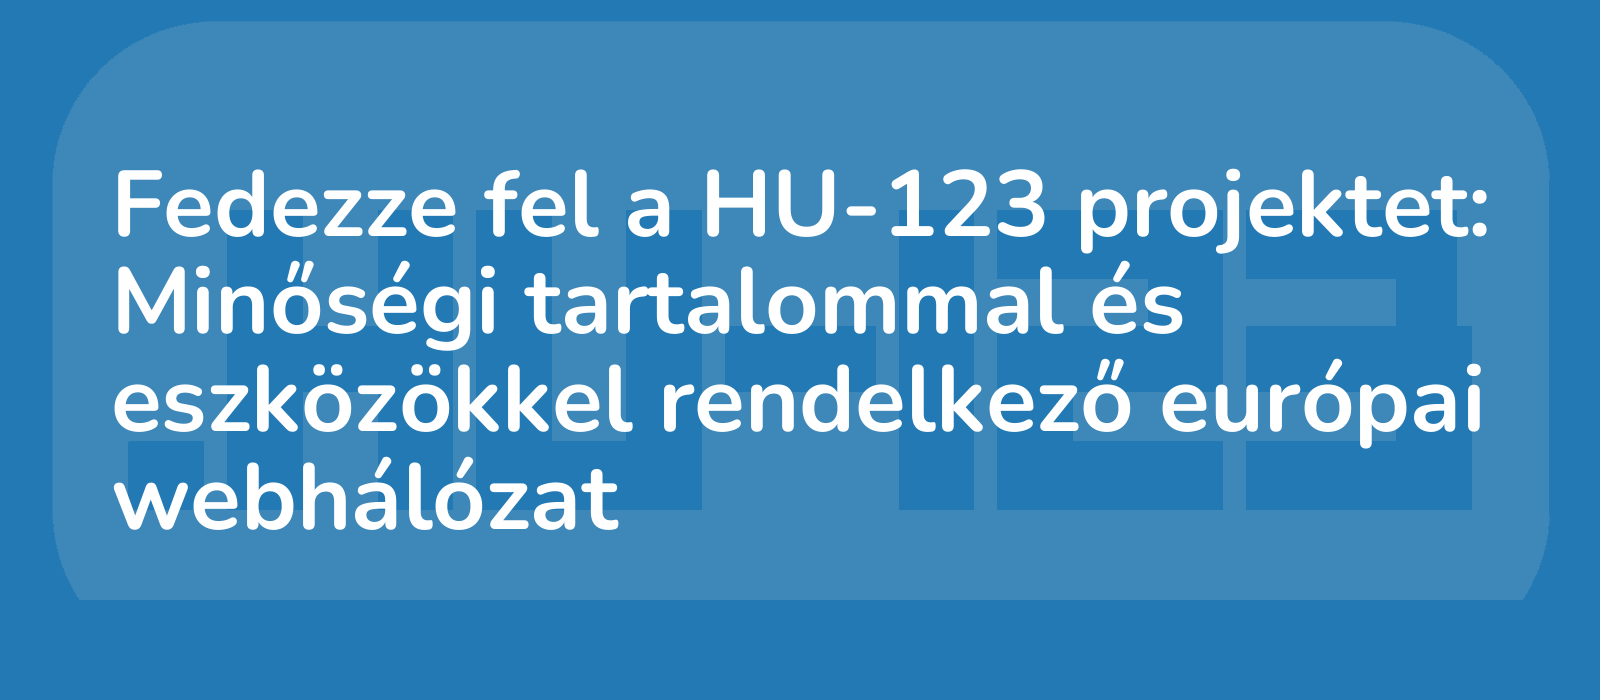 hu123